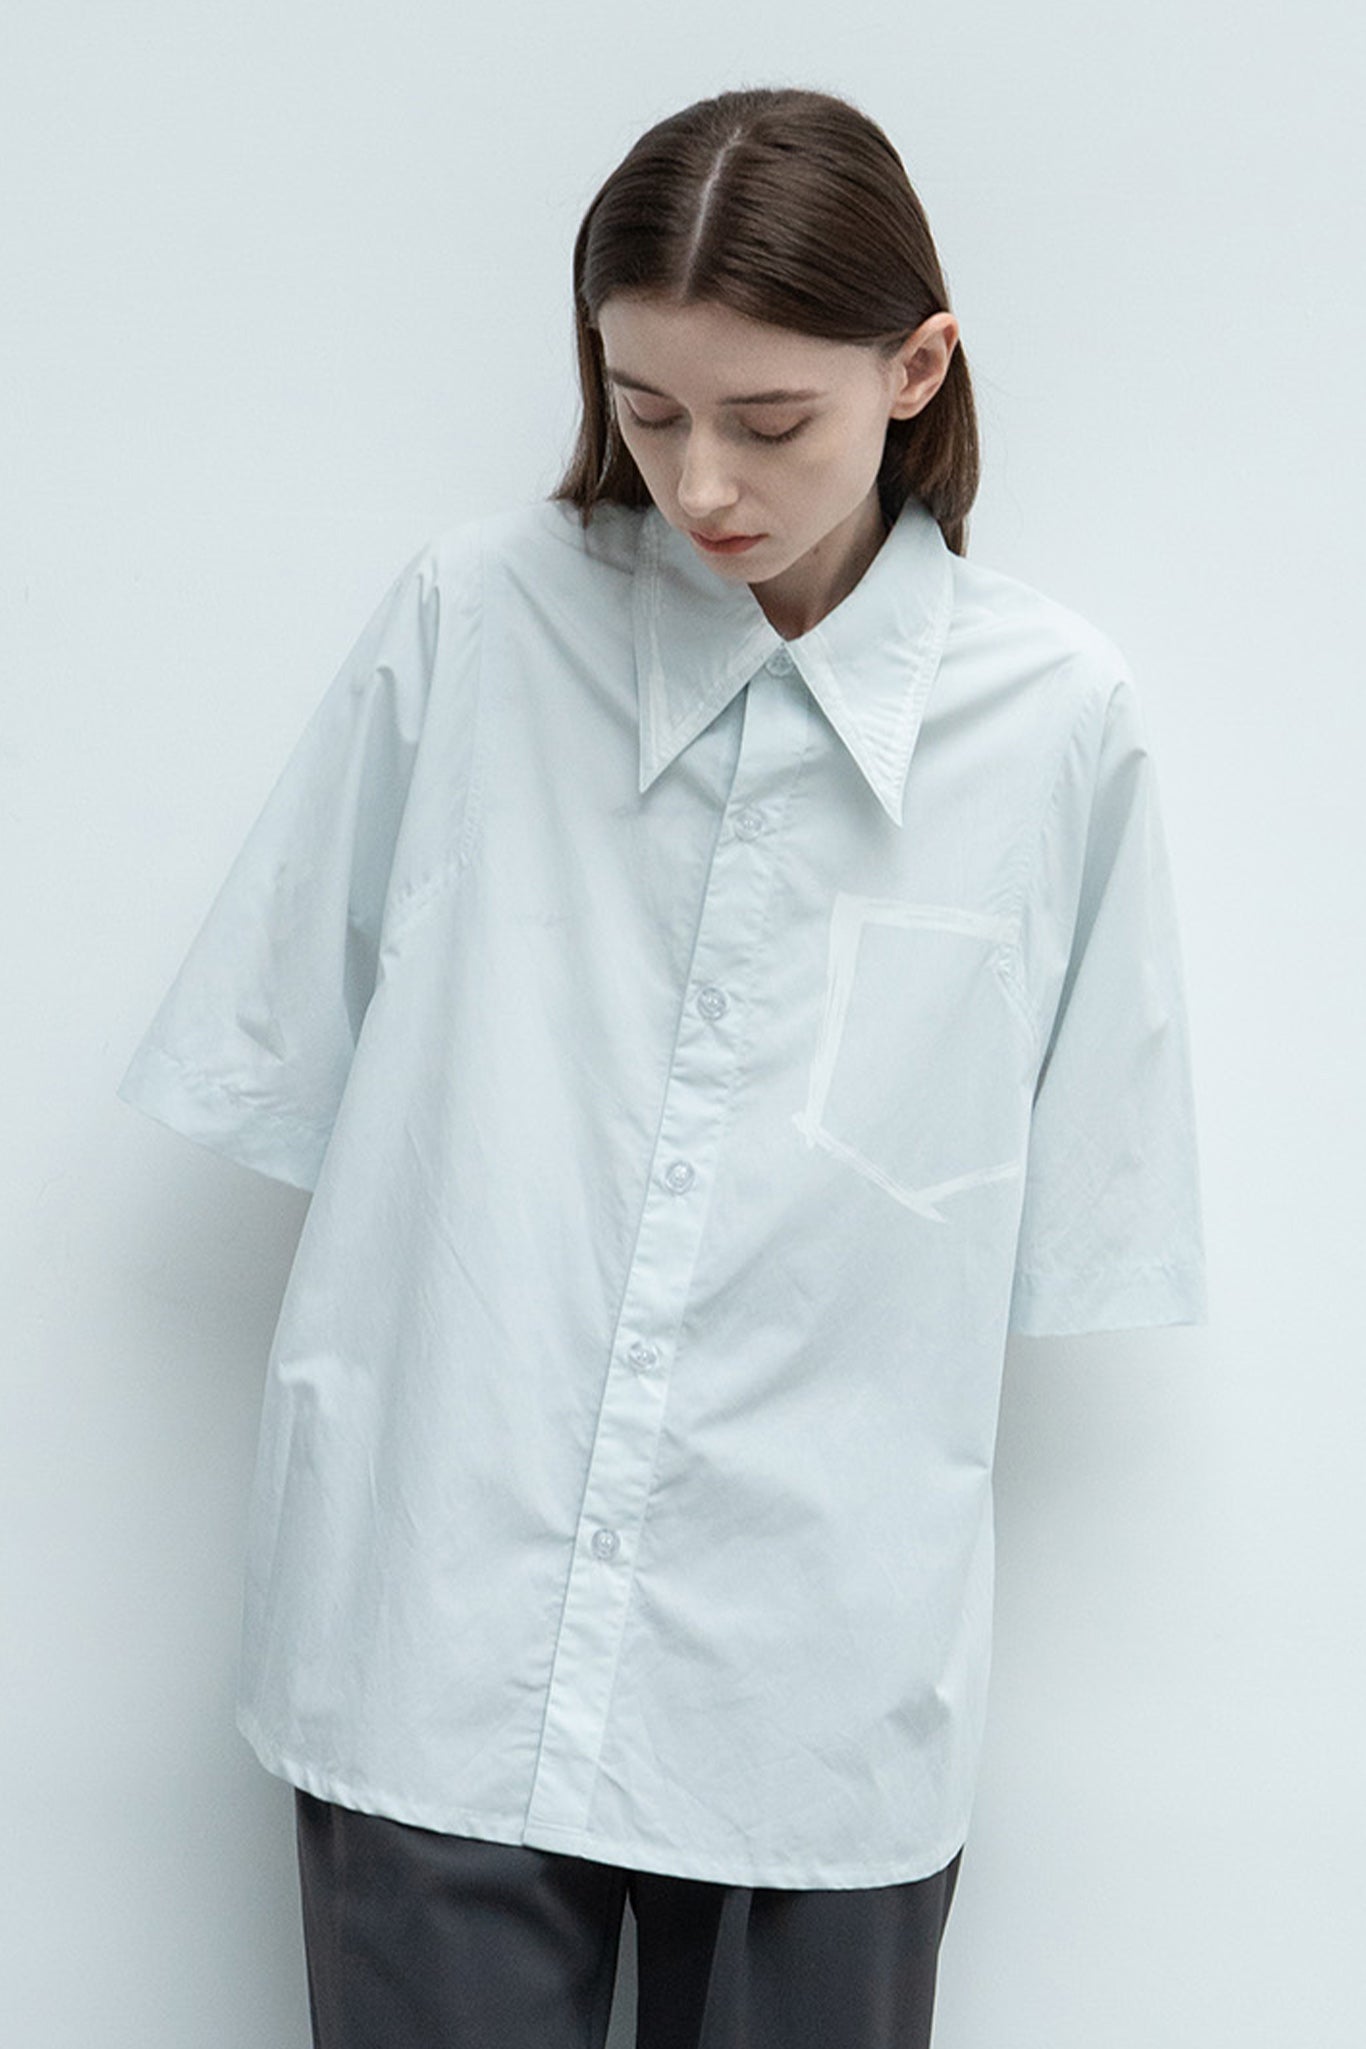 【 UNISEX 】 브러쉬 페인트 오버 셔츠 